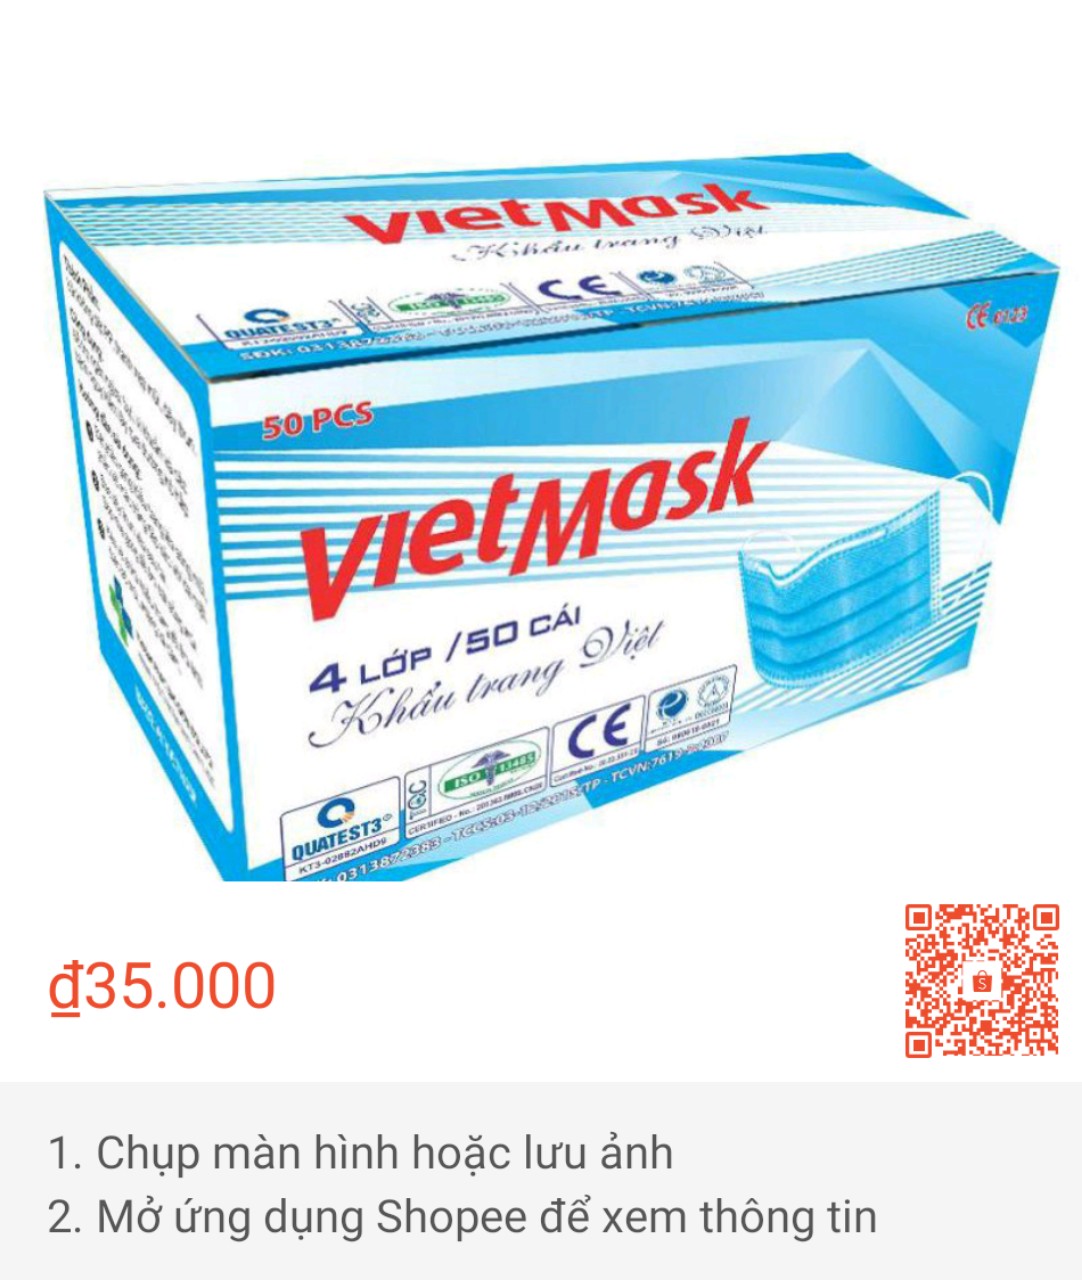 Khẩu trang y tế VIETMASK - Hàng Việt chất lượng quốc tế